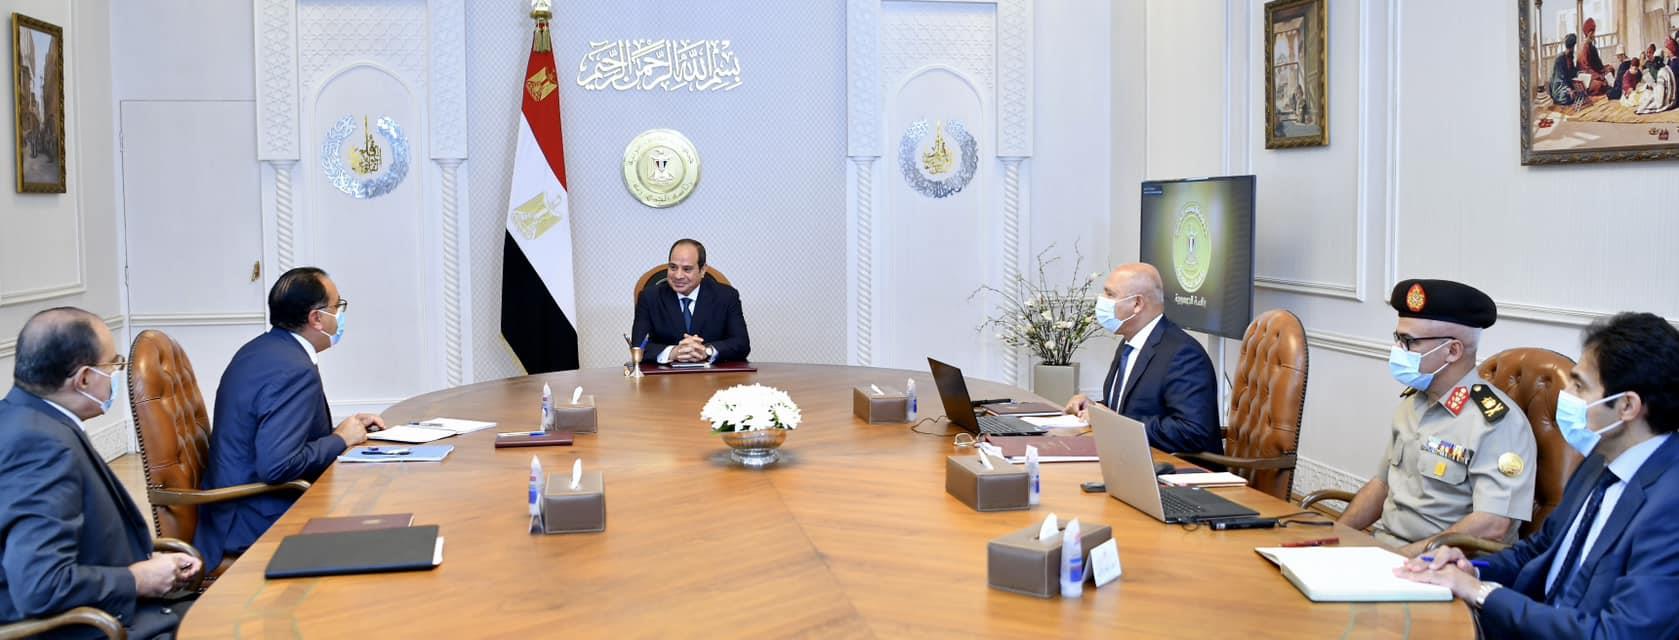 الرئيس عبد الفتاح السيسي يستعرض جهود تطوير ميناء ا